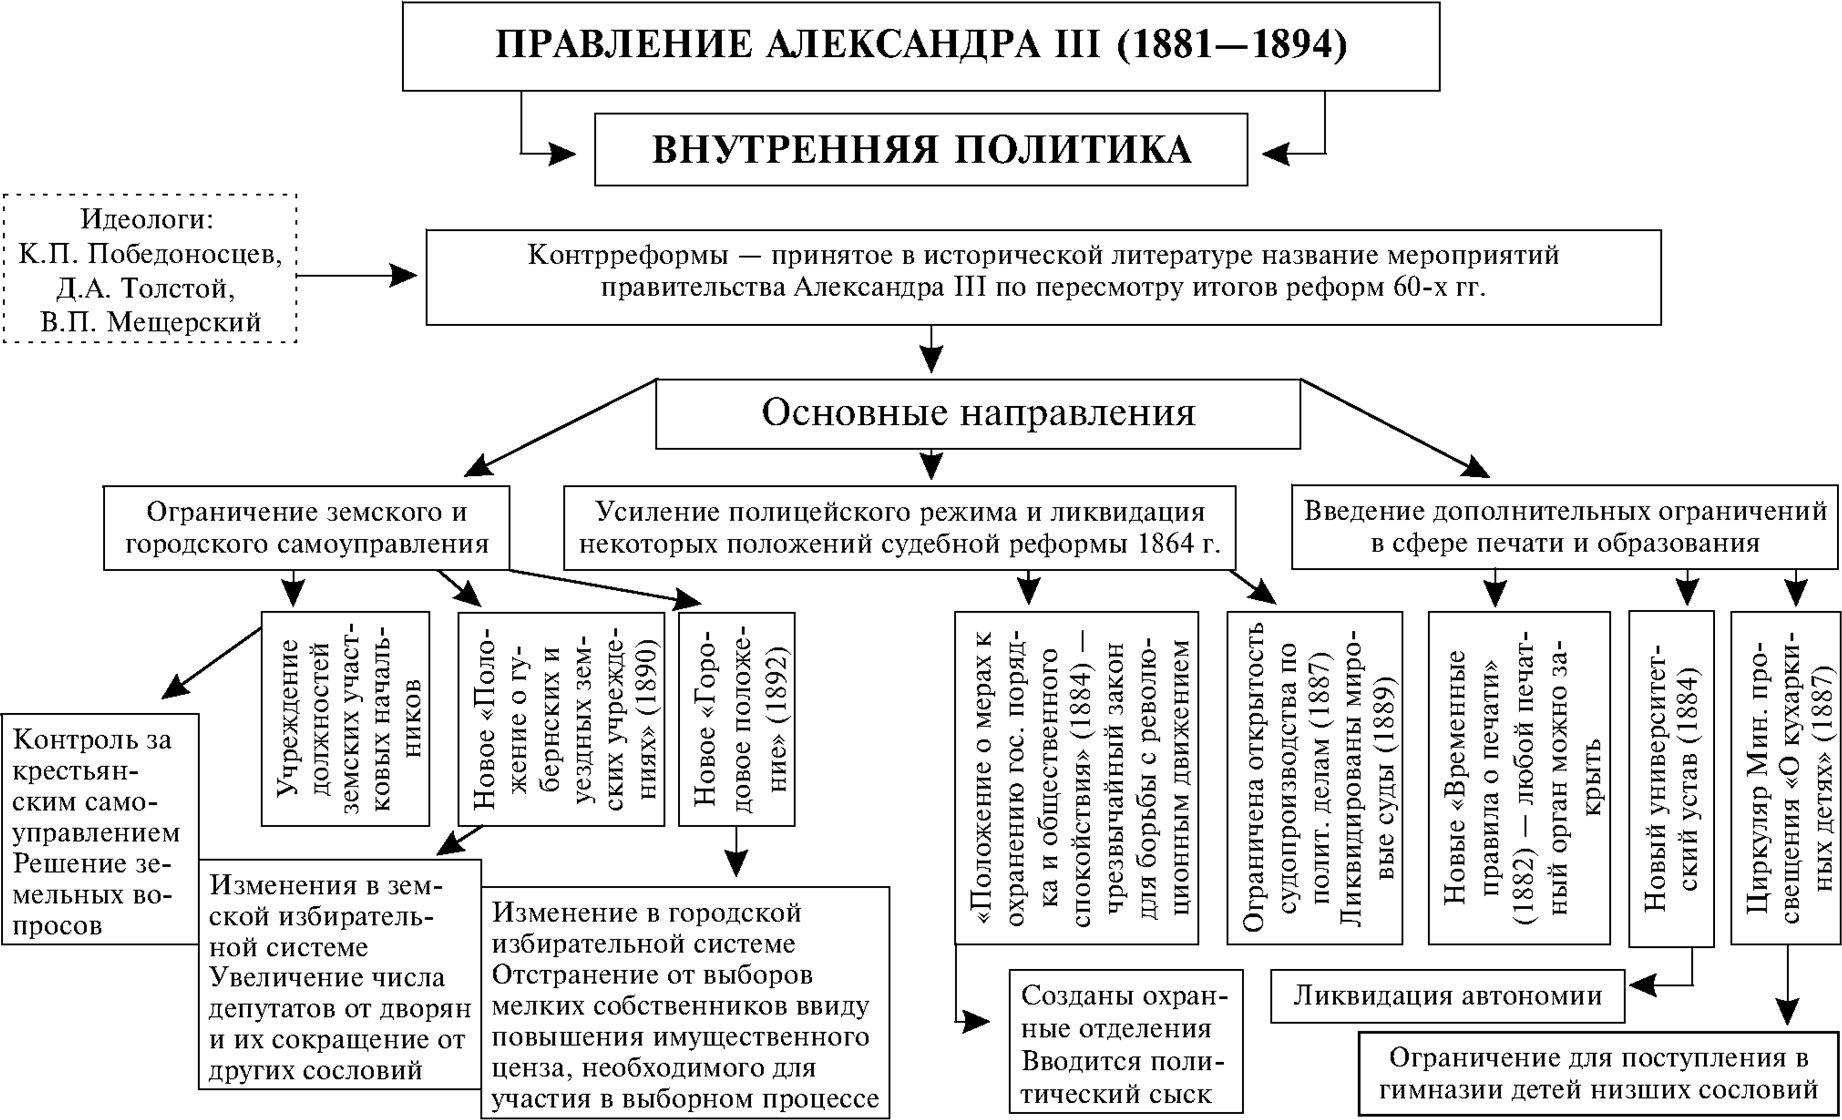 Договоры при александре 3. Россия во второй половине 19 века таблица.